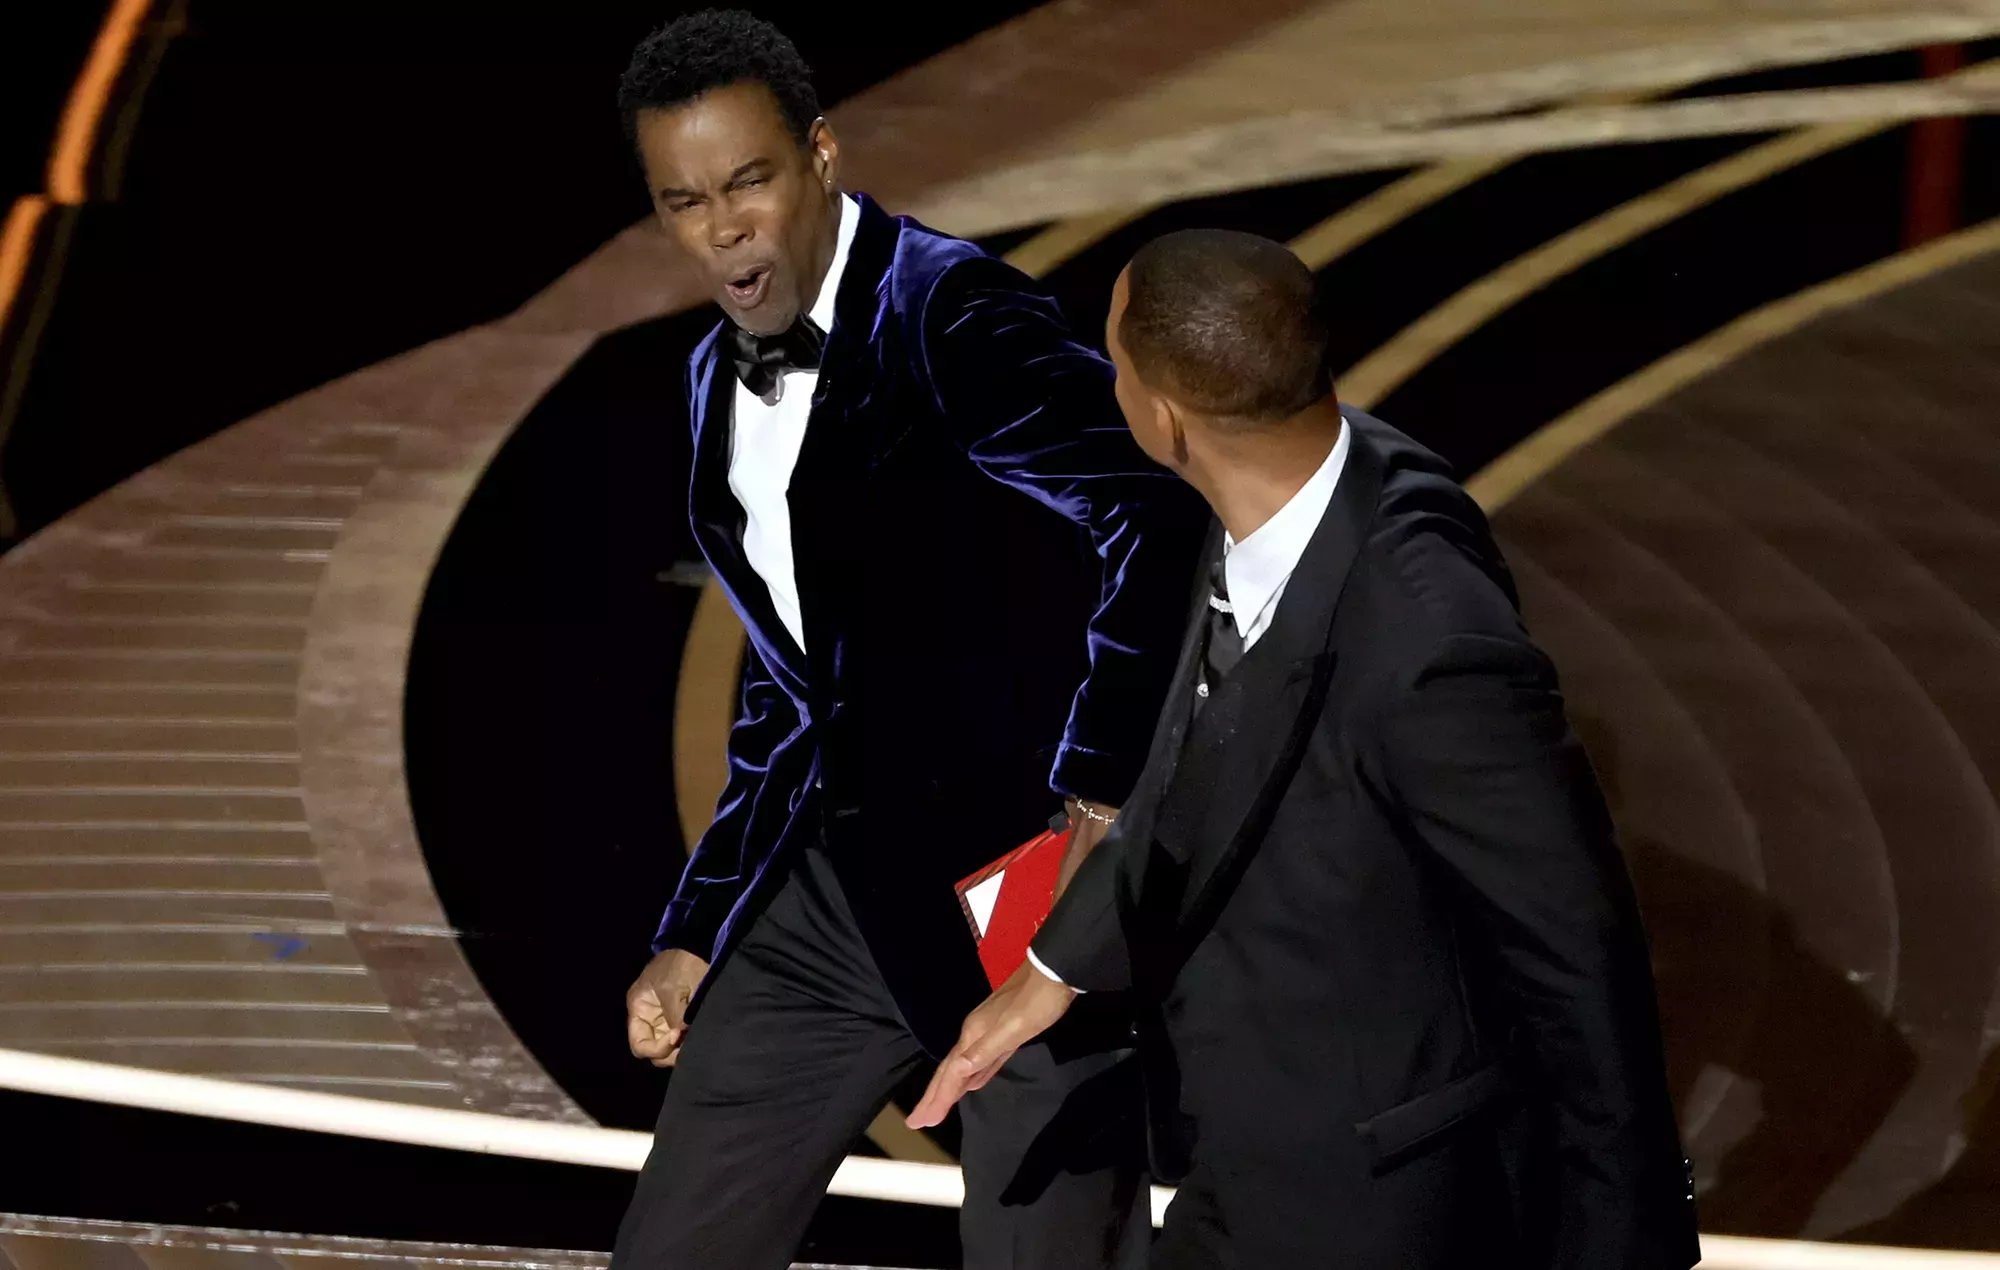 Chris Rock habla sobre la bofetada de Will Smith en los Oscars en un espectáculo de stand-up: 